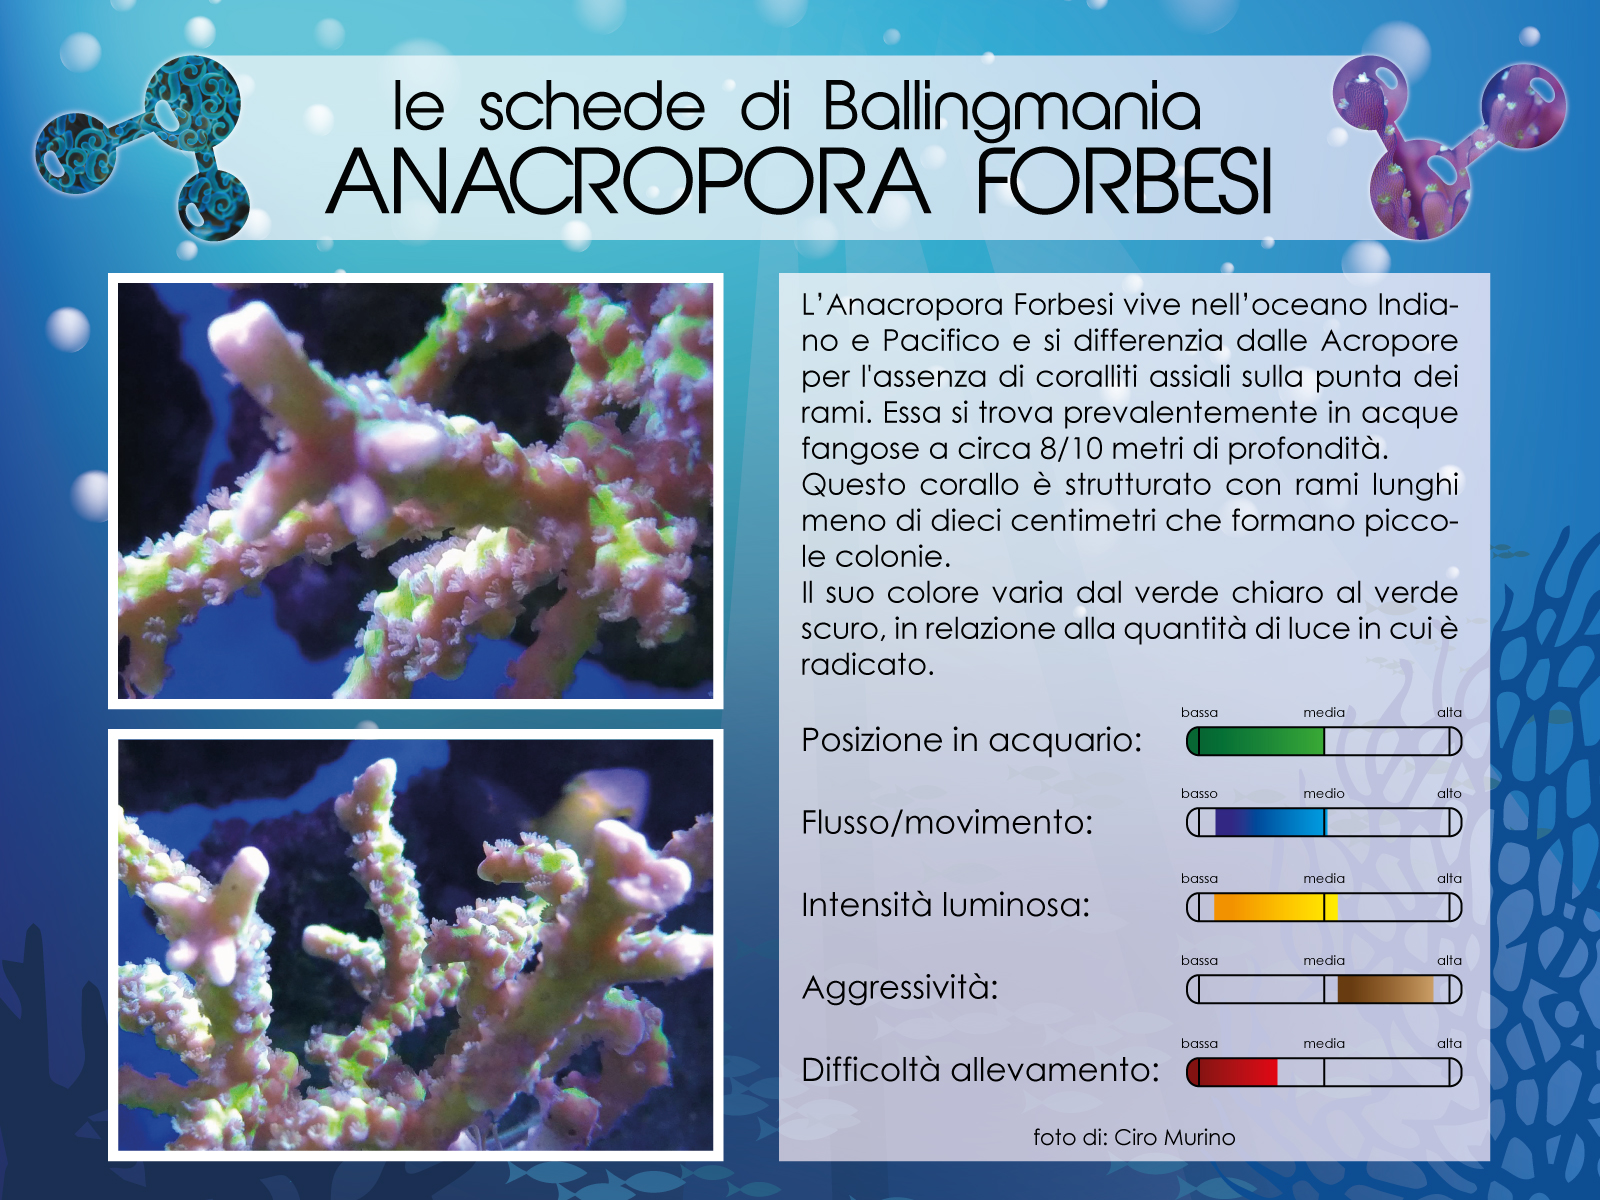 Anacropora Forbesi